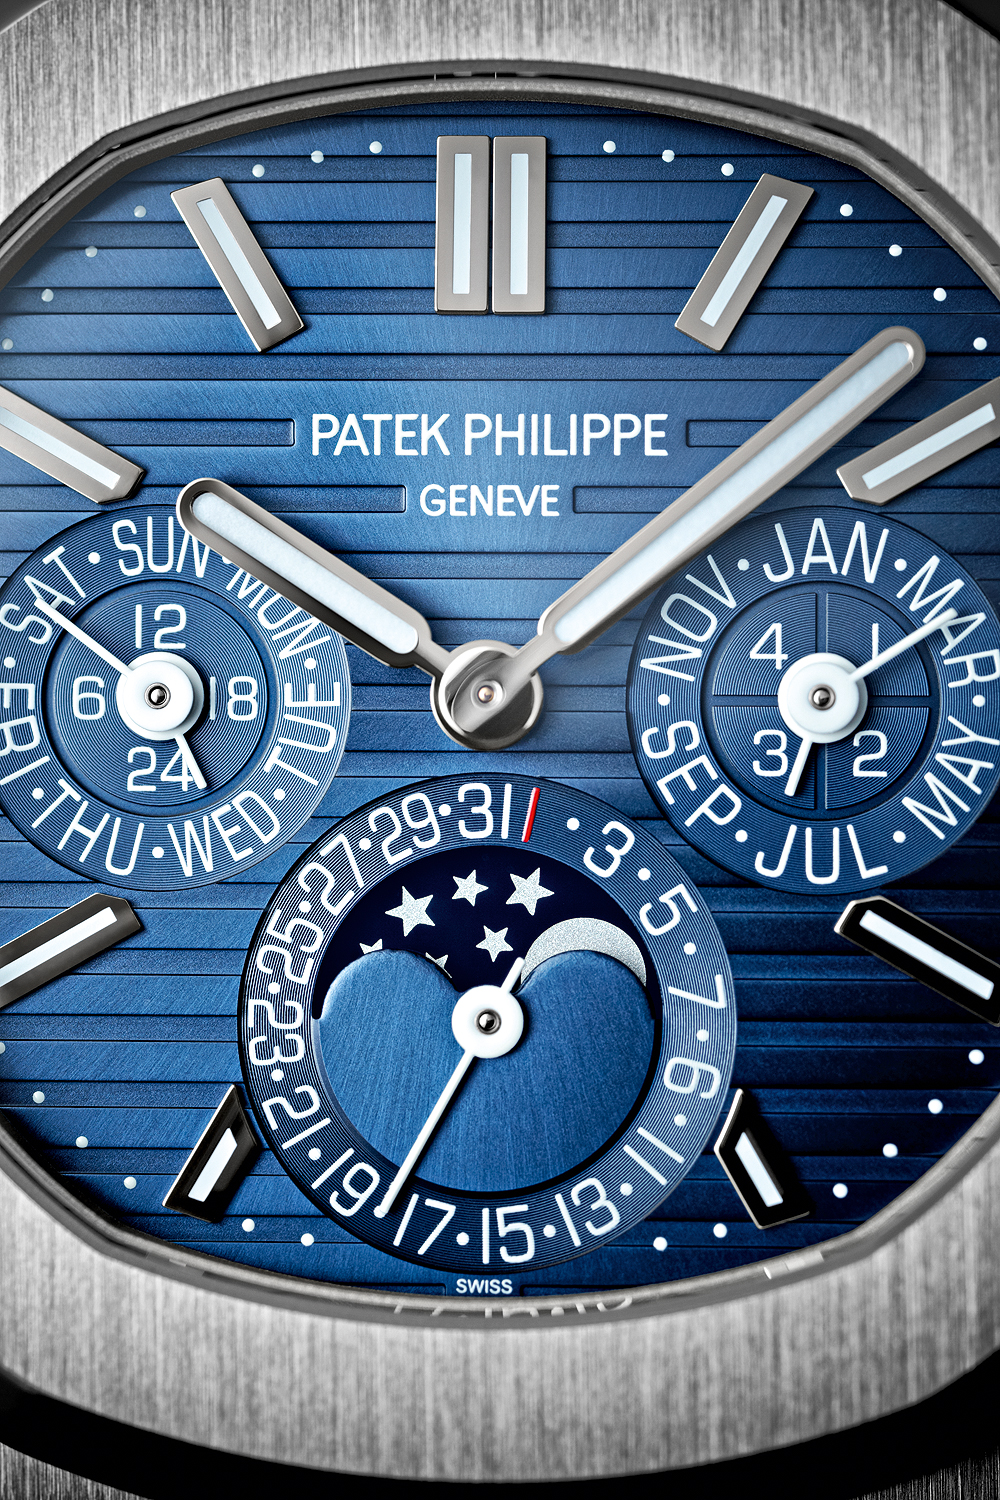 Patek Philippe Nautilus Perpetual Calendar Sunburst White Gold/ Blue Dial (Ref#5740/1G-001)